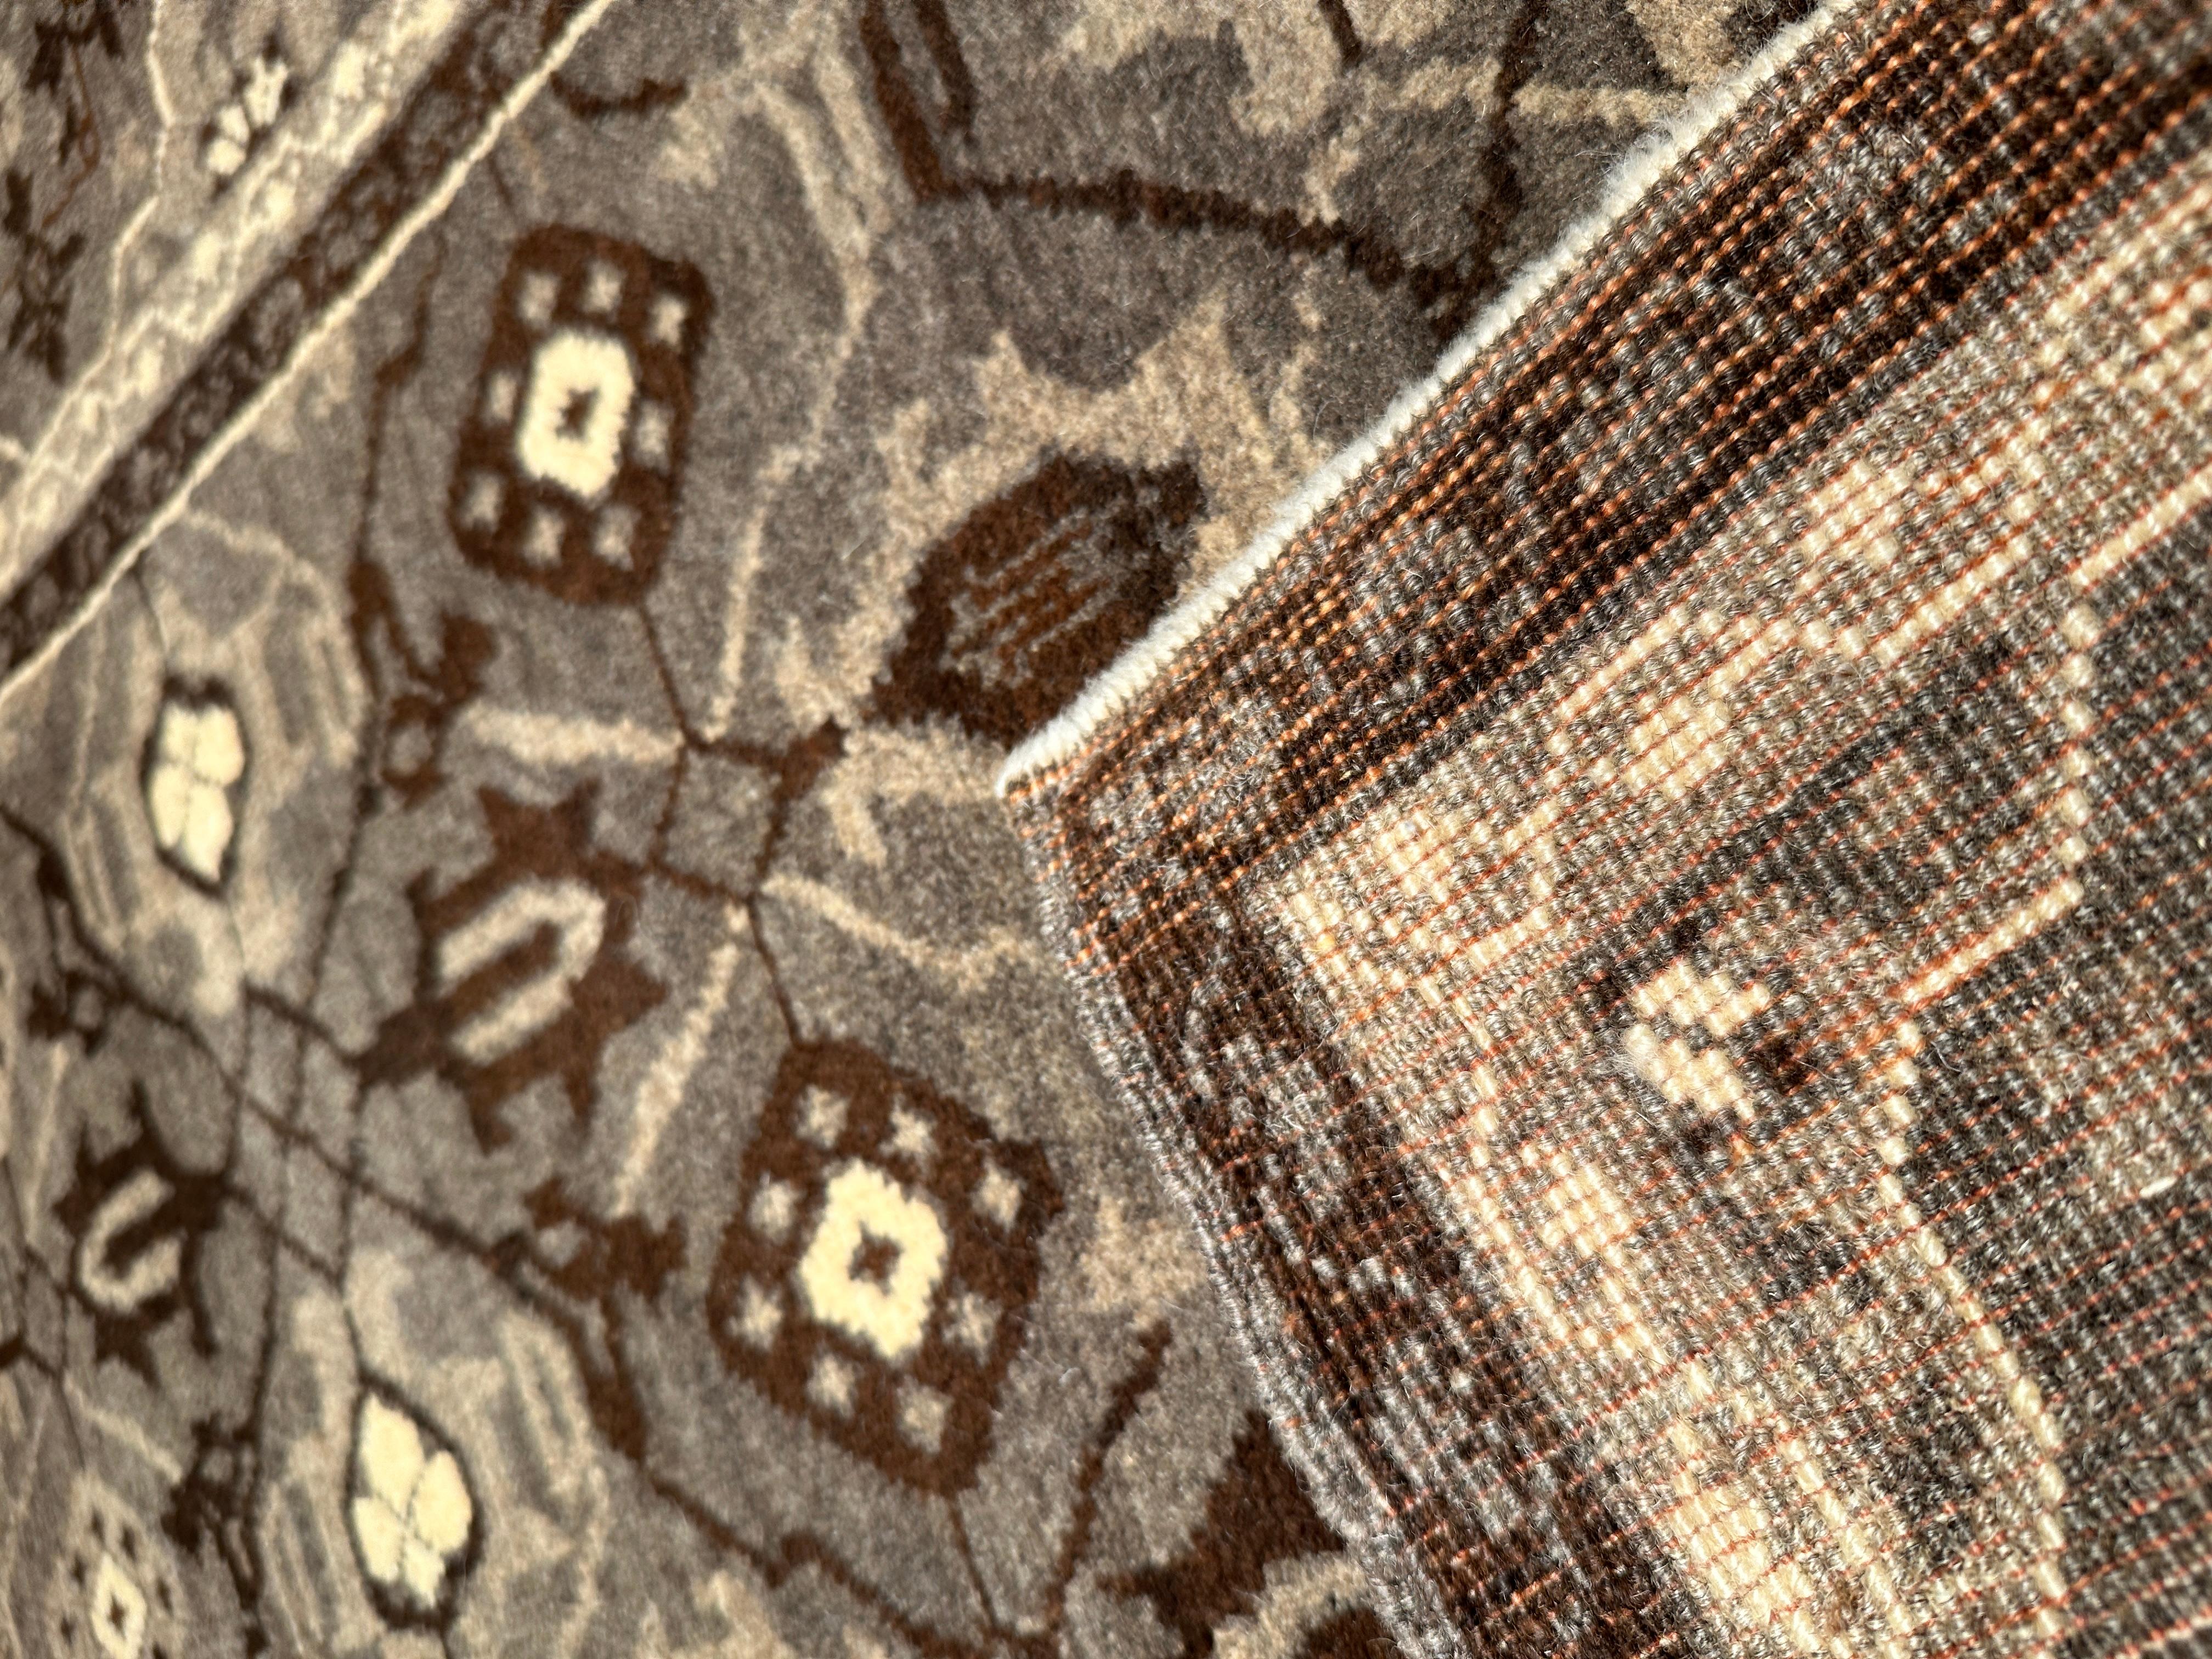 Le tapis source provient de la Collection Mercer Sotheby's 2000 (couverture du catalogue). Ce tapis mamelouk-cairen est connu, car il présente curieusement un certain type de treillis. Il a été conçu au début du XVIe siècle par la sultane mamelouke